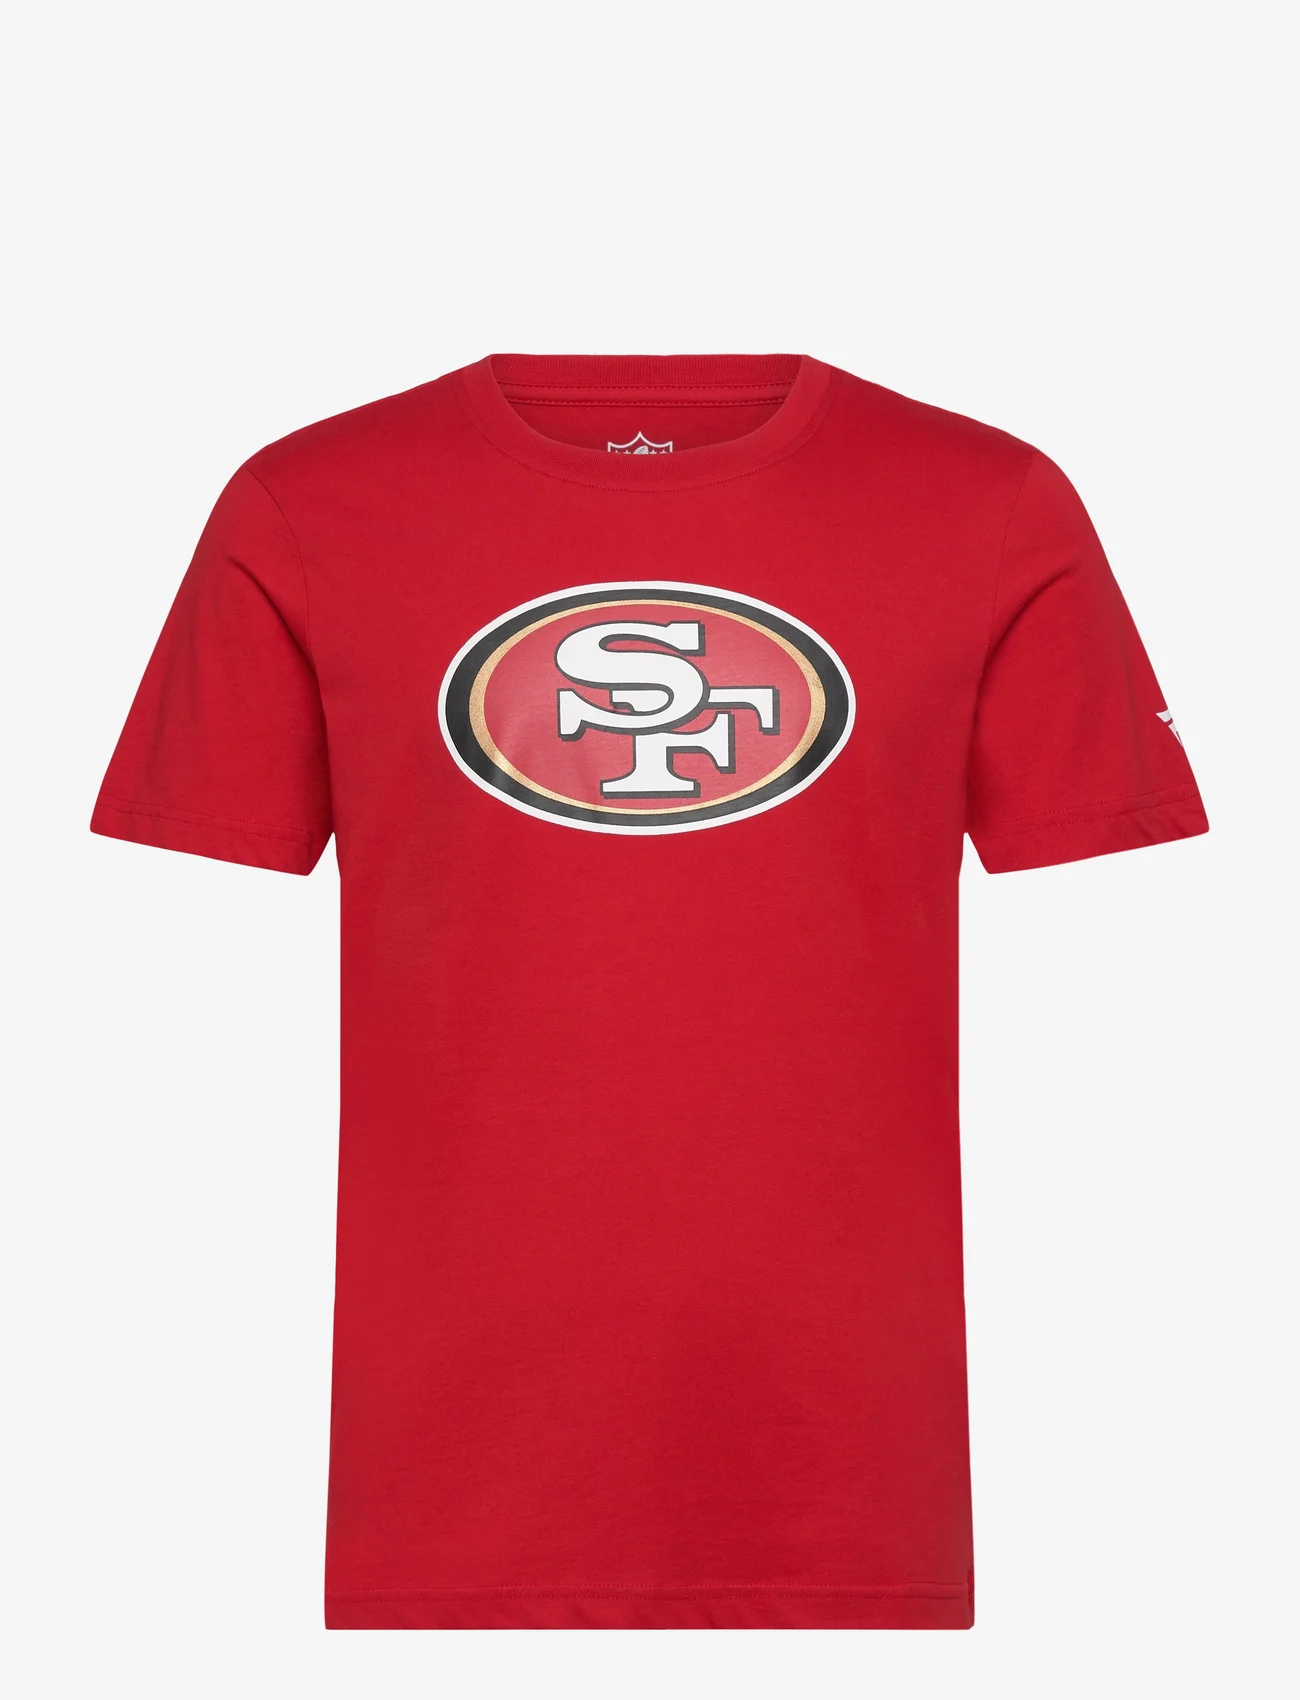 Fanatics - San Francisco 49ers Primary Logo Graphic T-Shirt - mažiausios kainos - samba red - 0